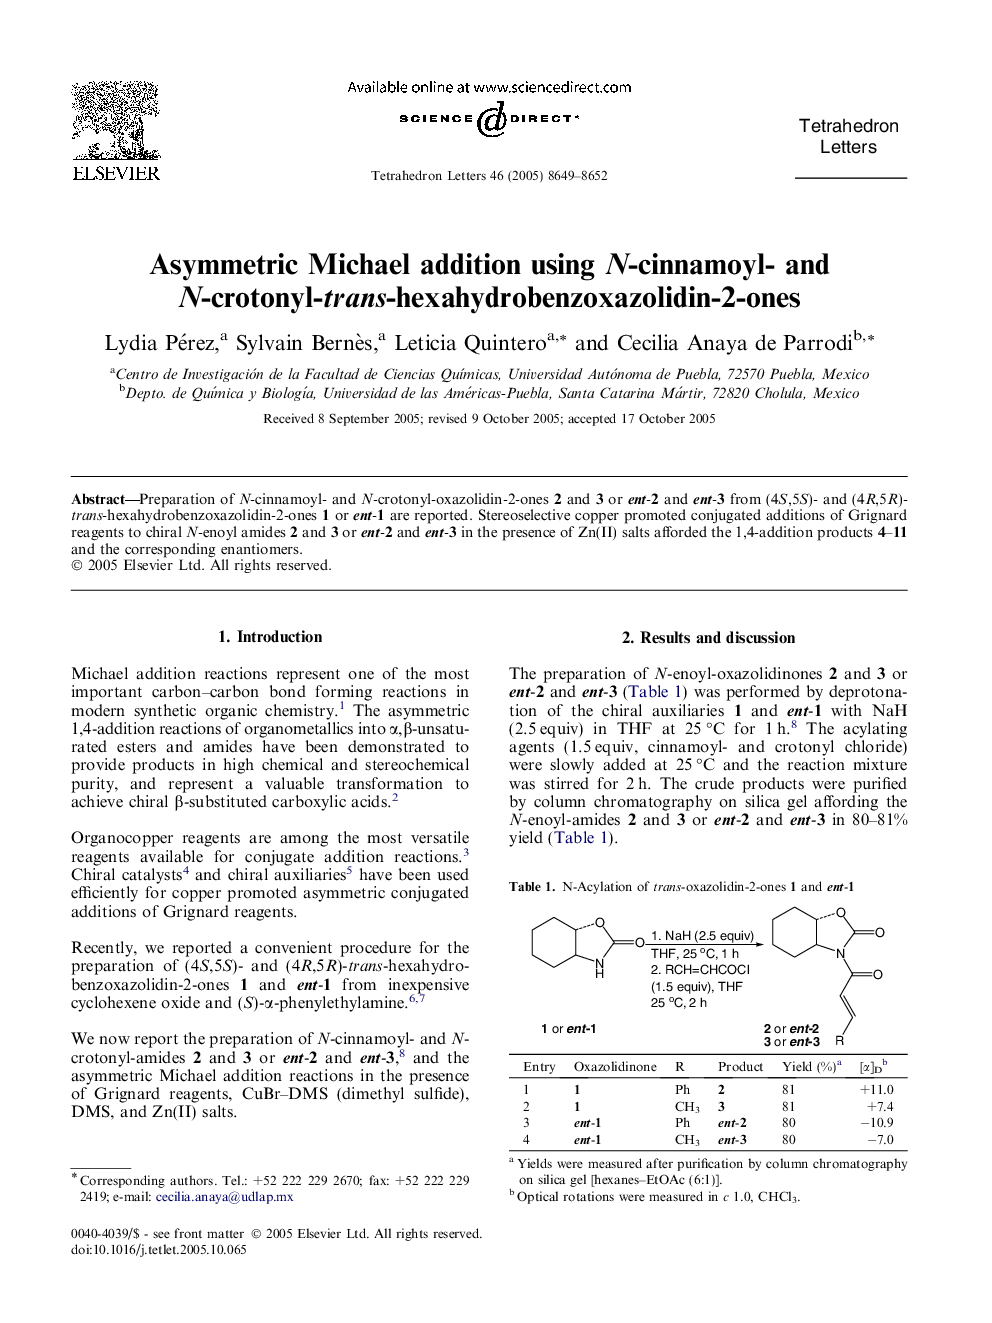 Asymmetric Michael addition using N-cinnamoyl- and N-crotonyl-trans-hexahydrobenzoxazolidin-2-ones